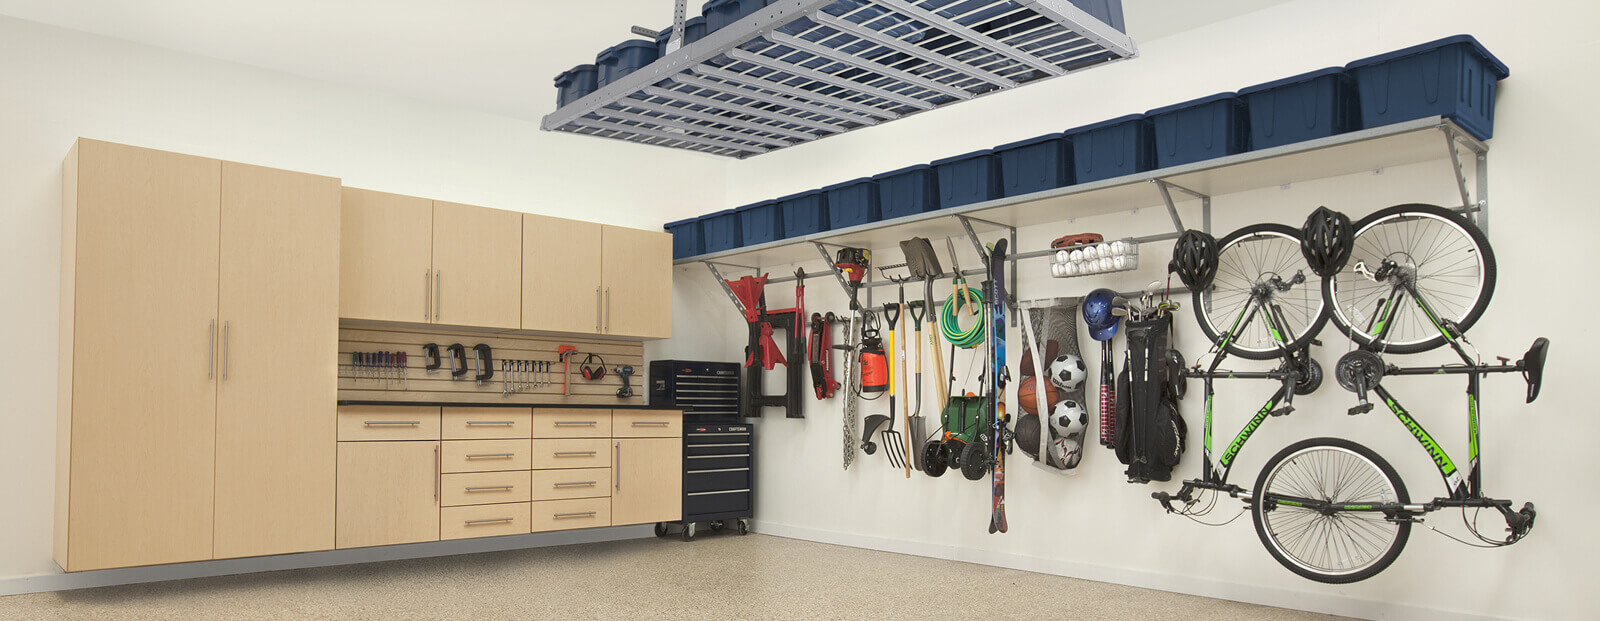 Garage Storage Dallas, Flooring, Cabinets, Overhead Storage